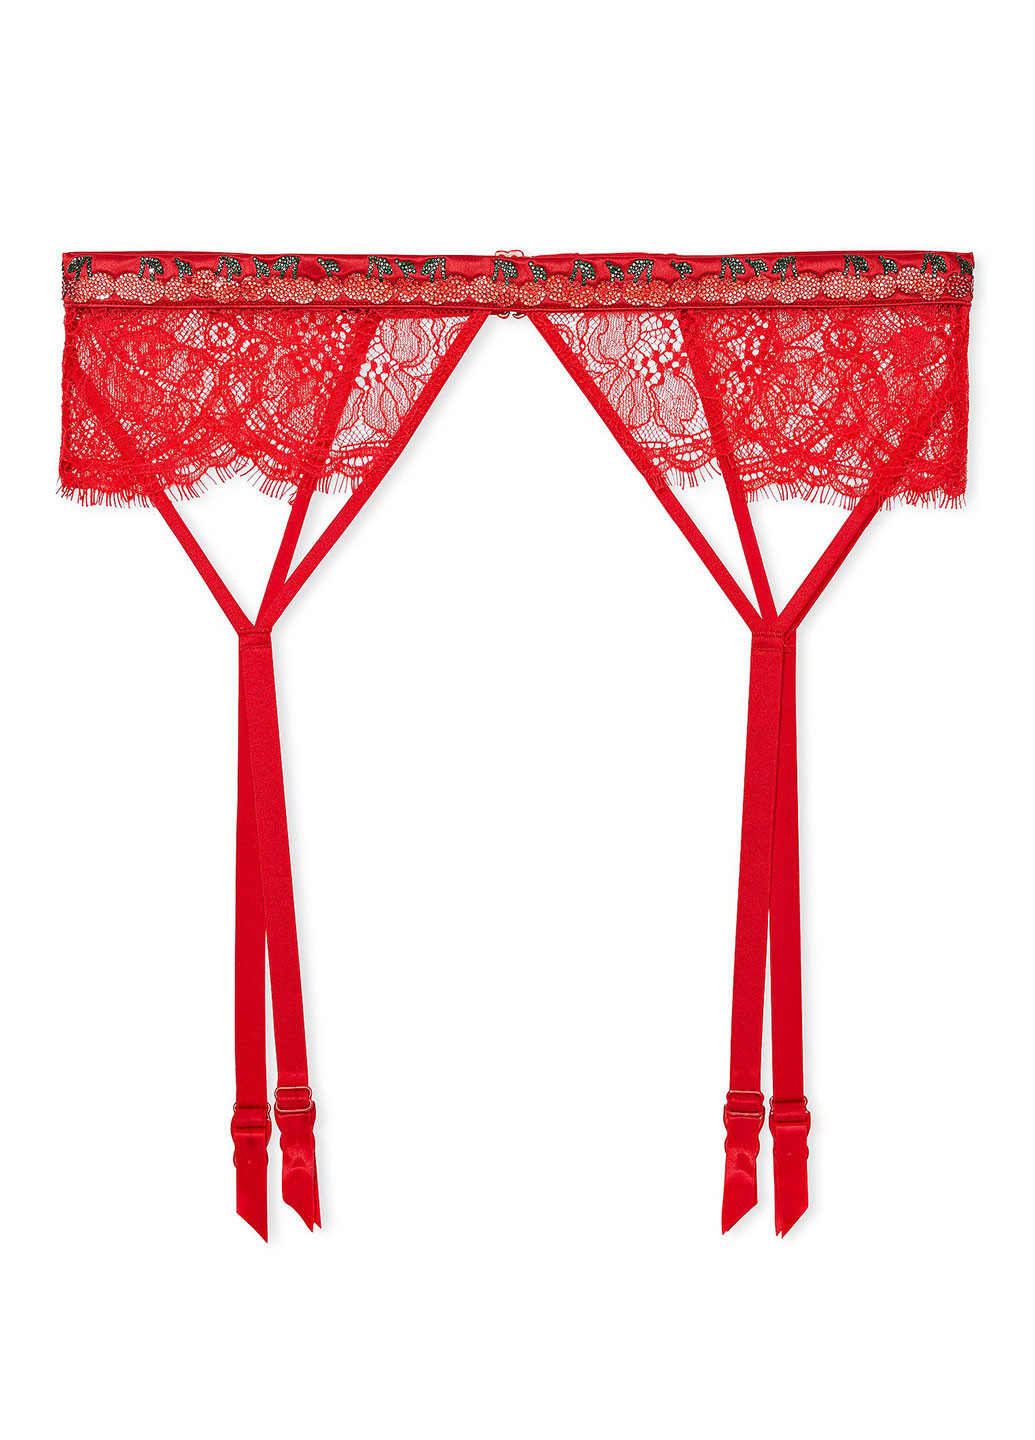 Красный демисезонный комплект (бюстгальтер, трусики, пояс для чулок) Victoria's Secret